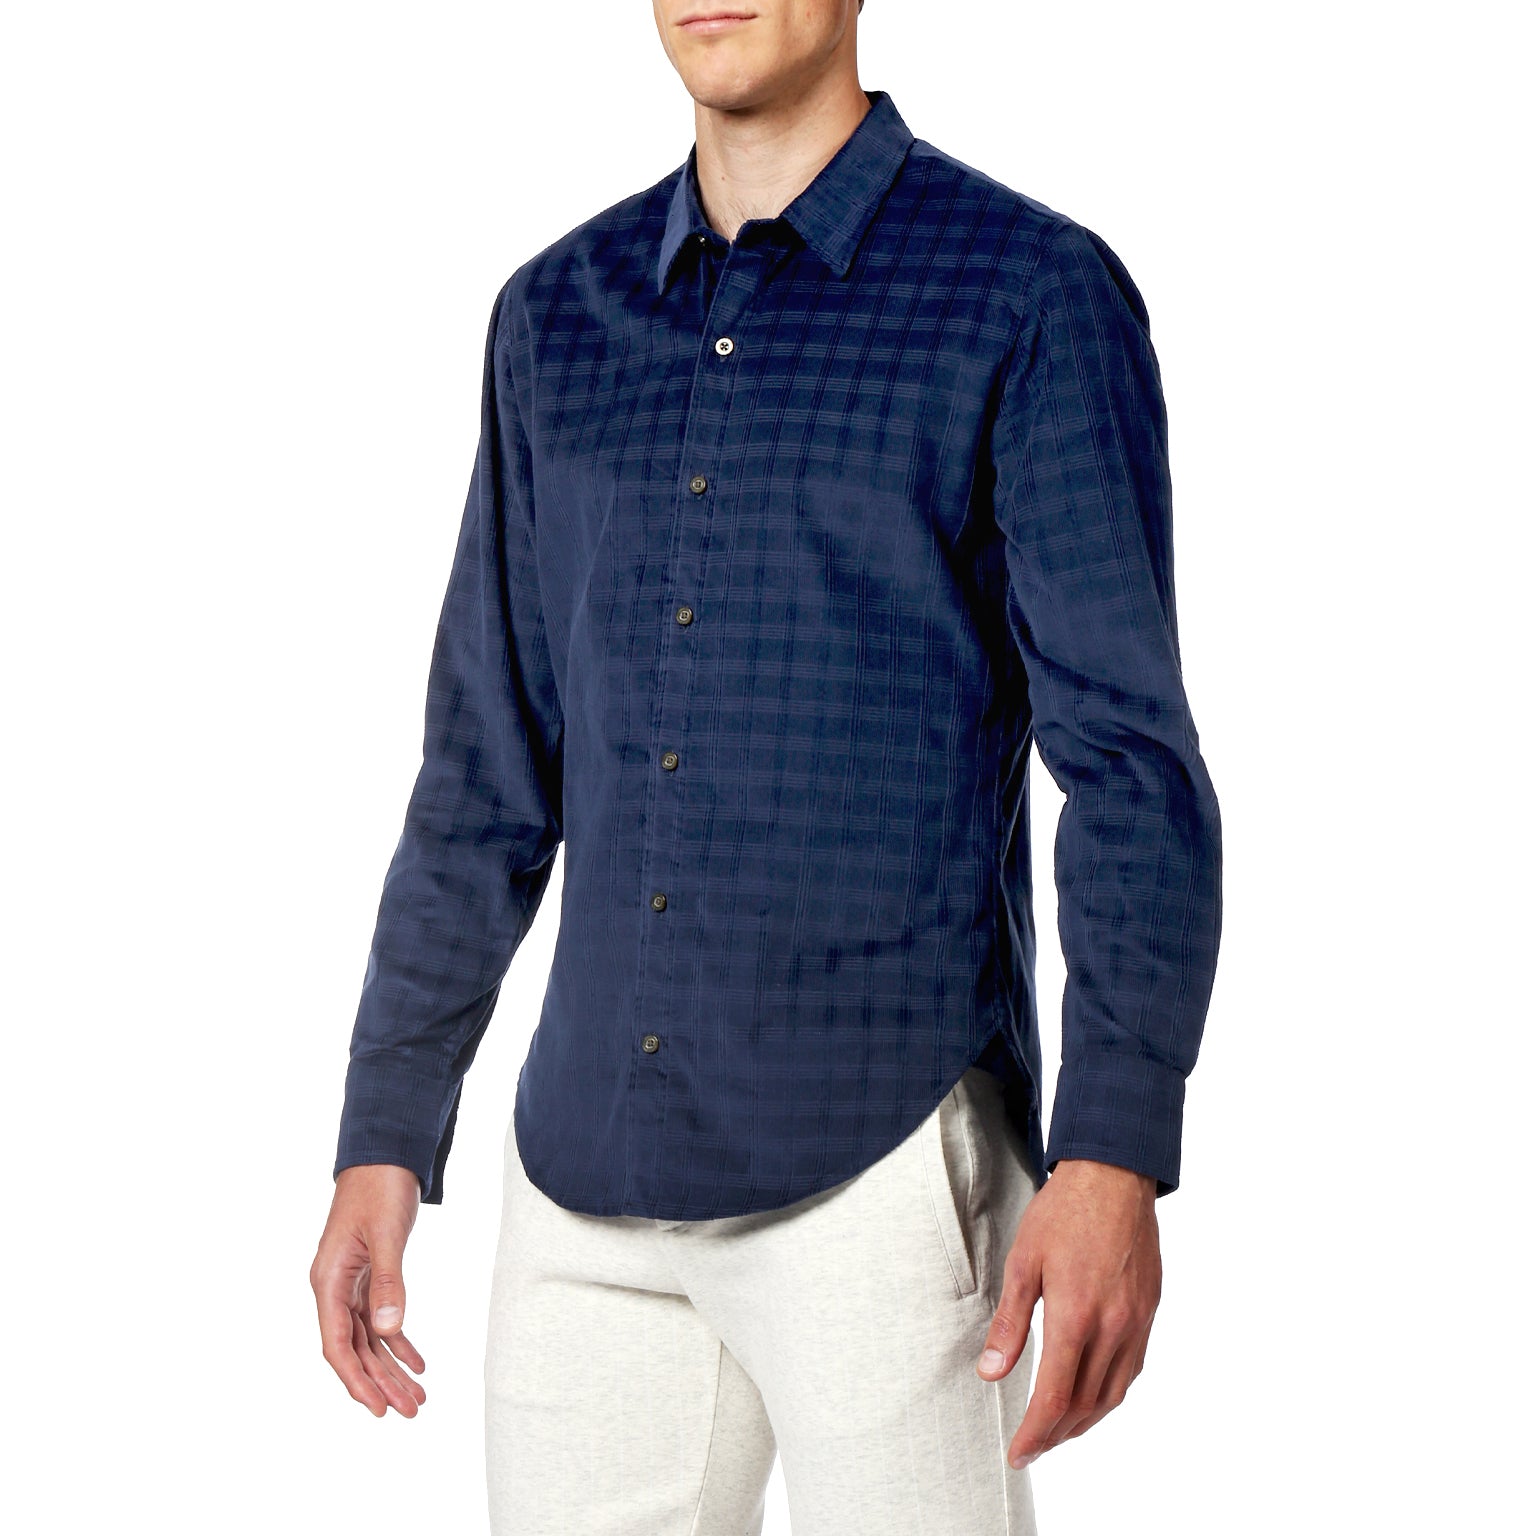 NEW- Ultramarine Corduroy Check Shirt